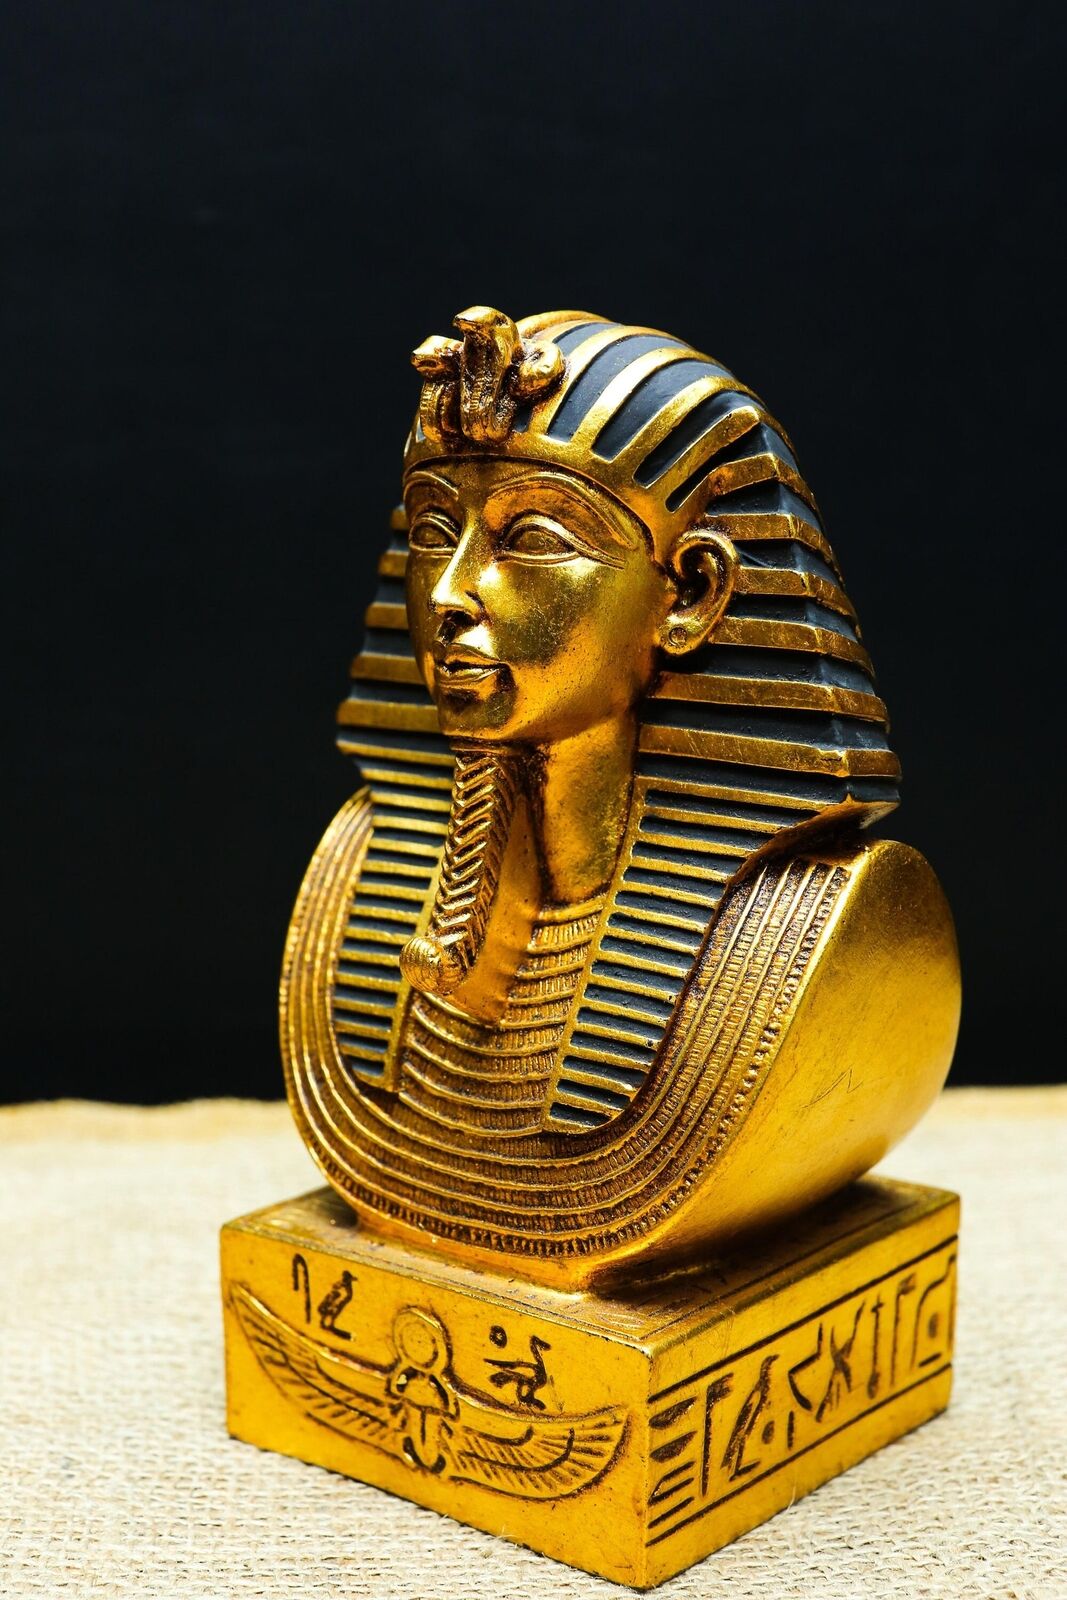 Spectacular King Tutankhamun - king Tutankhamun's statue